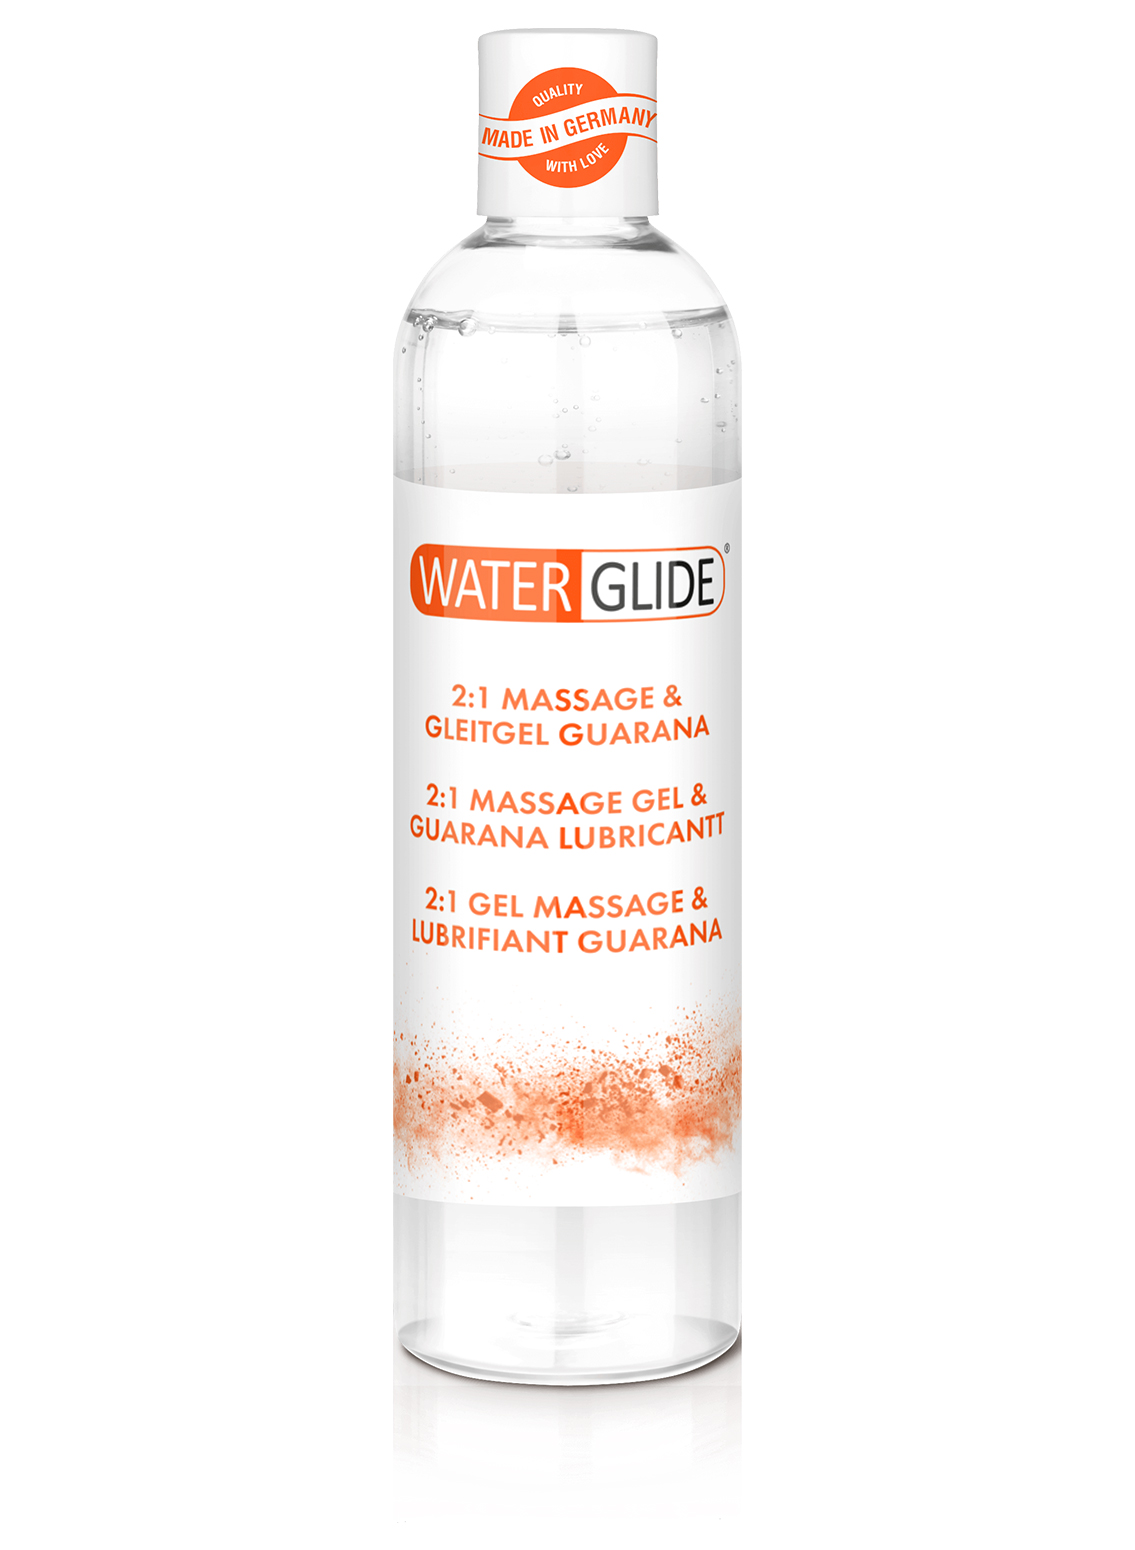 Waterglide 2:1 Massage & Lubricant Guarana 300ml